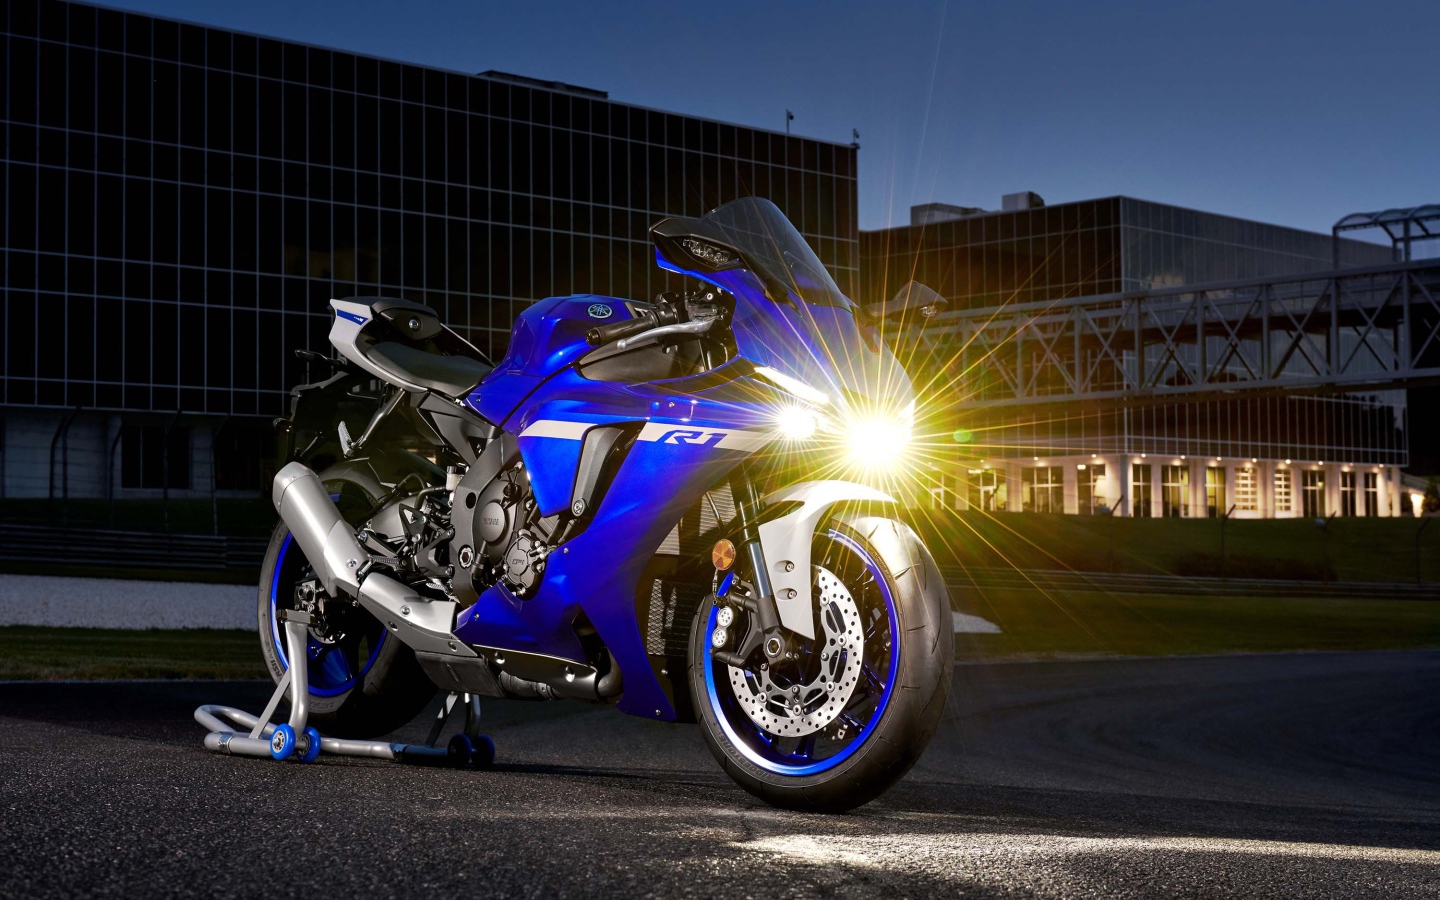 Мотоцикл Yamaha YZF-R1 2020 года с включенной фарой